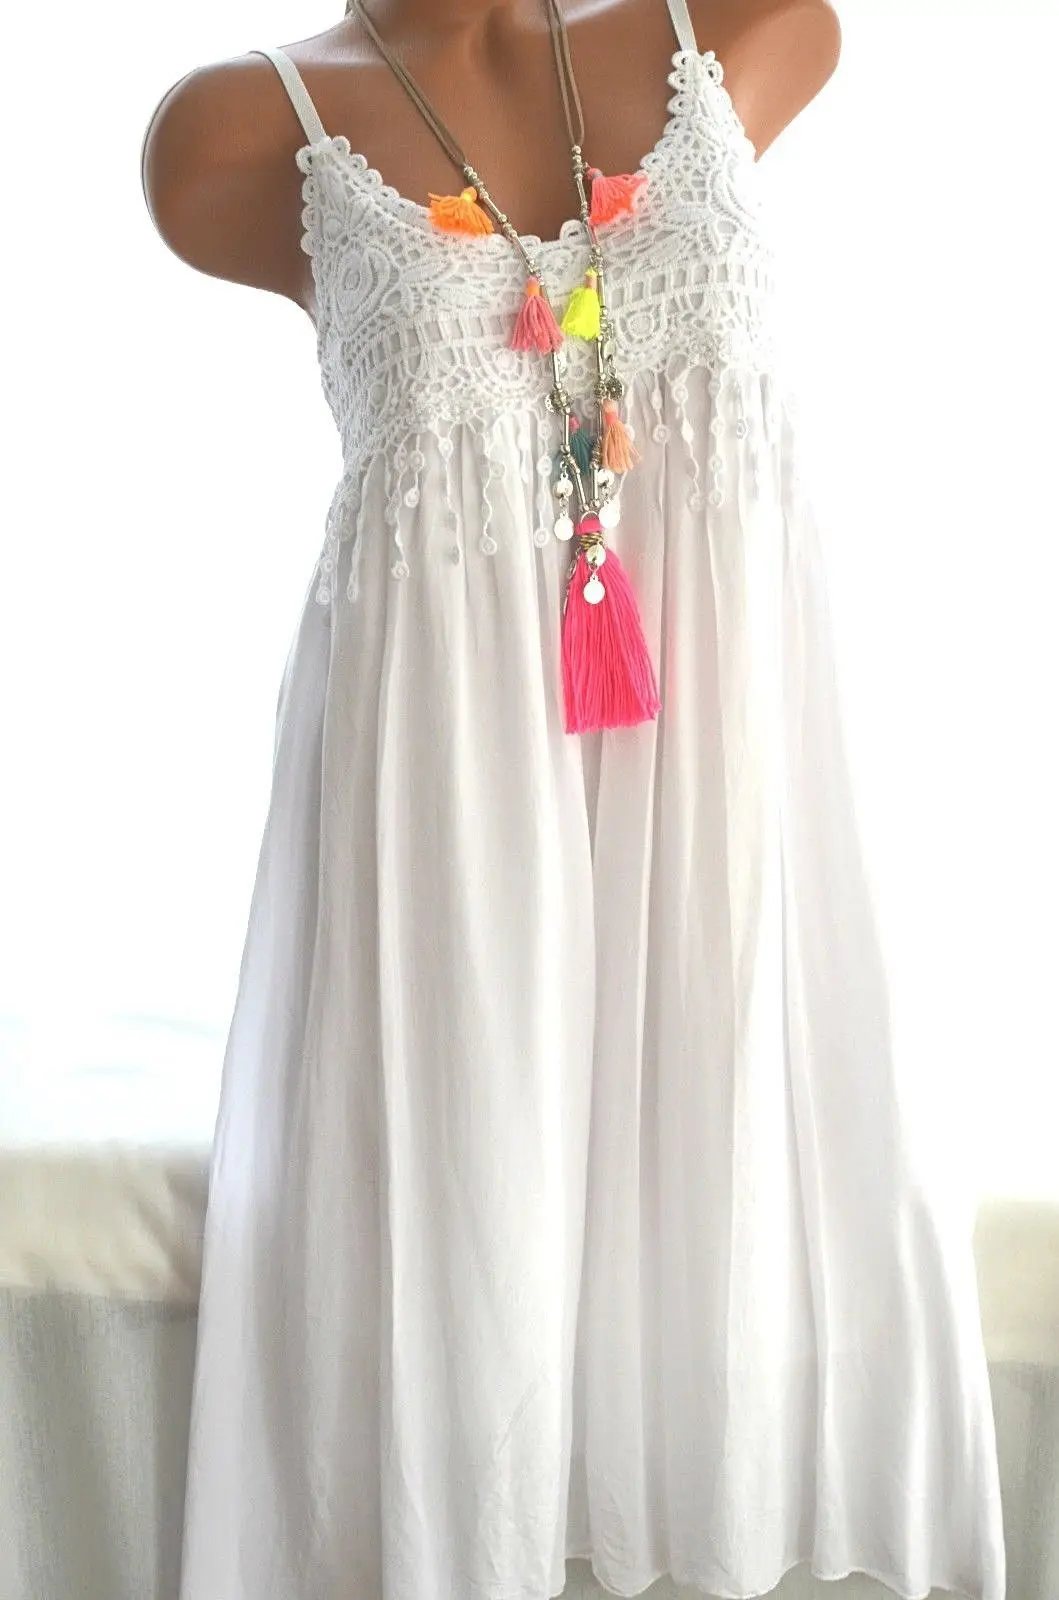 Женское платье на подтяжках большого размера летнее Новое Кружевное шифоновое платье 5XL